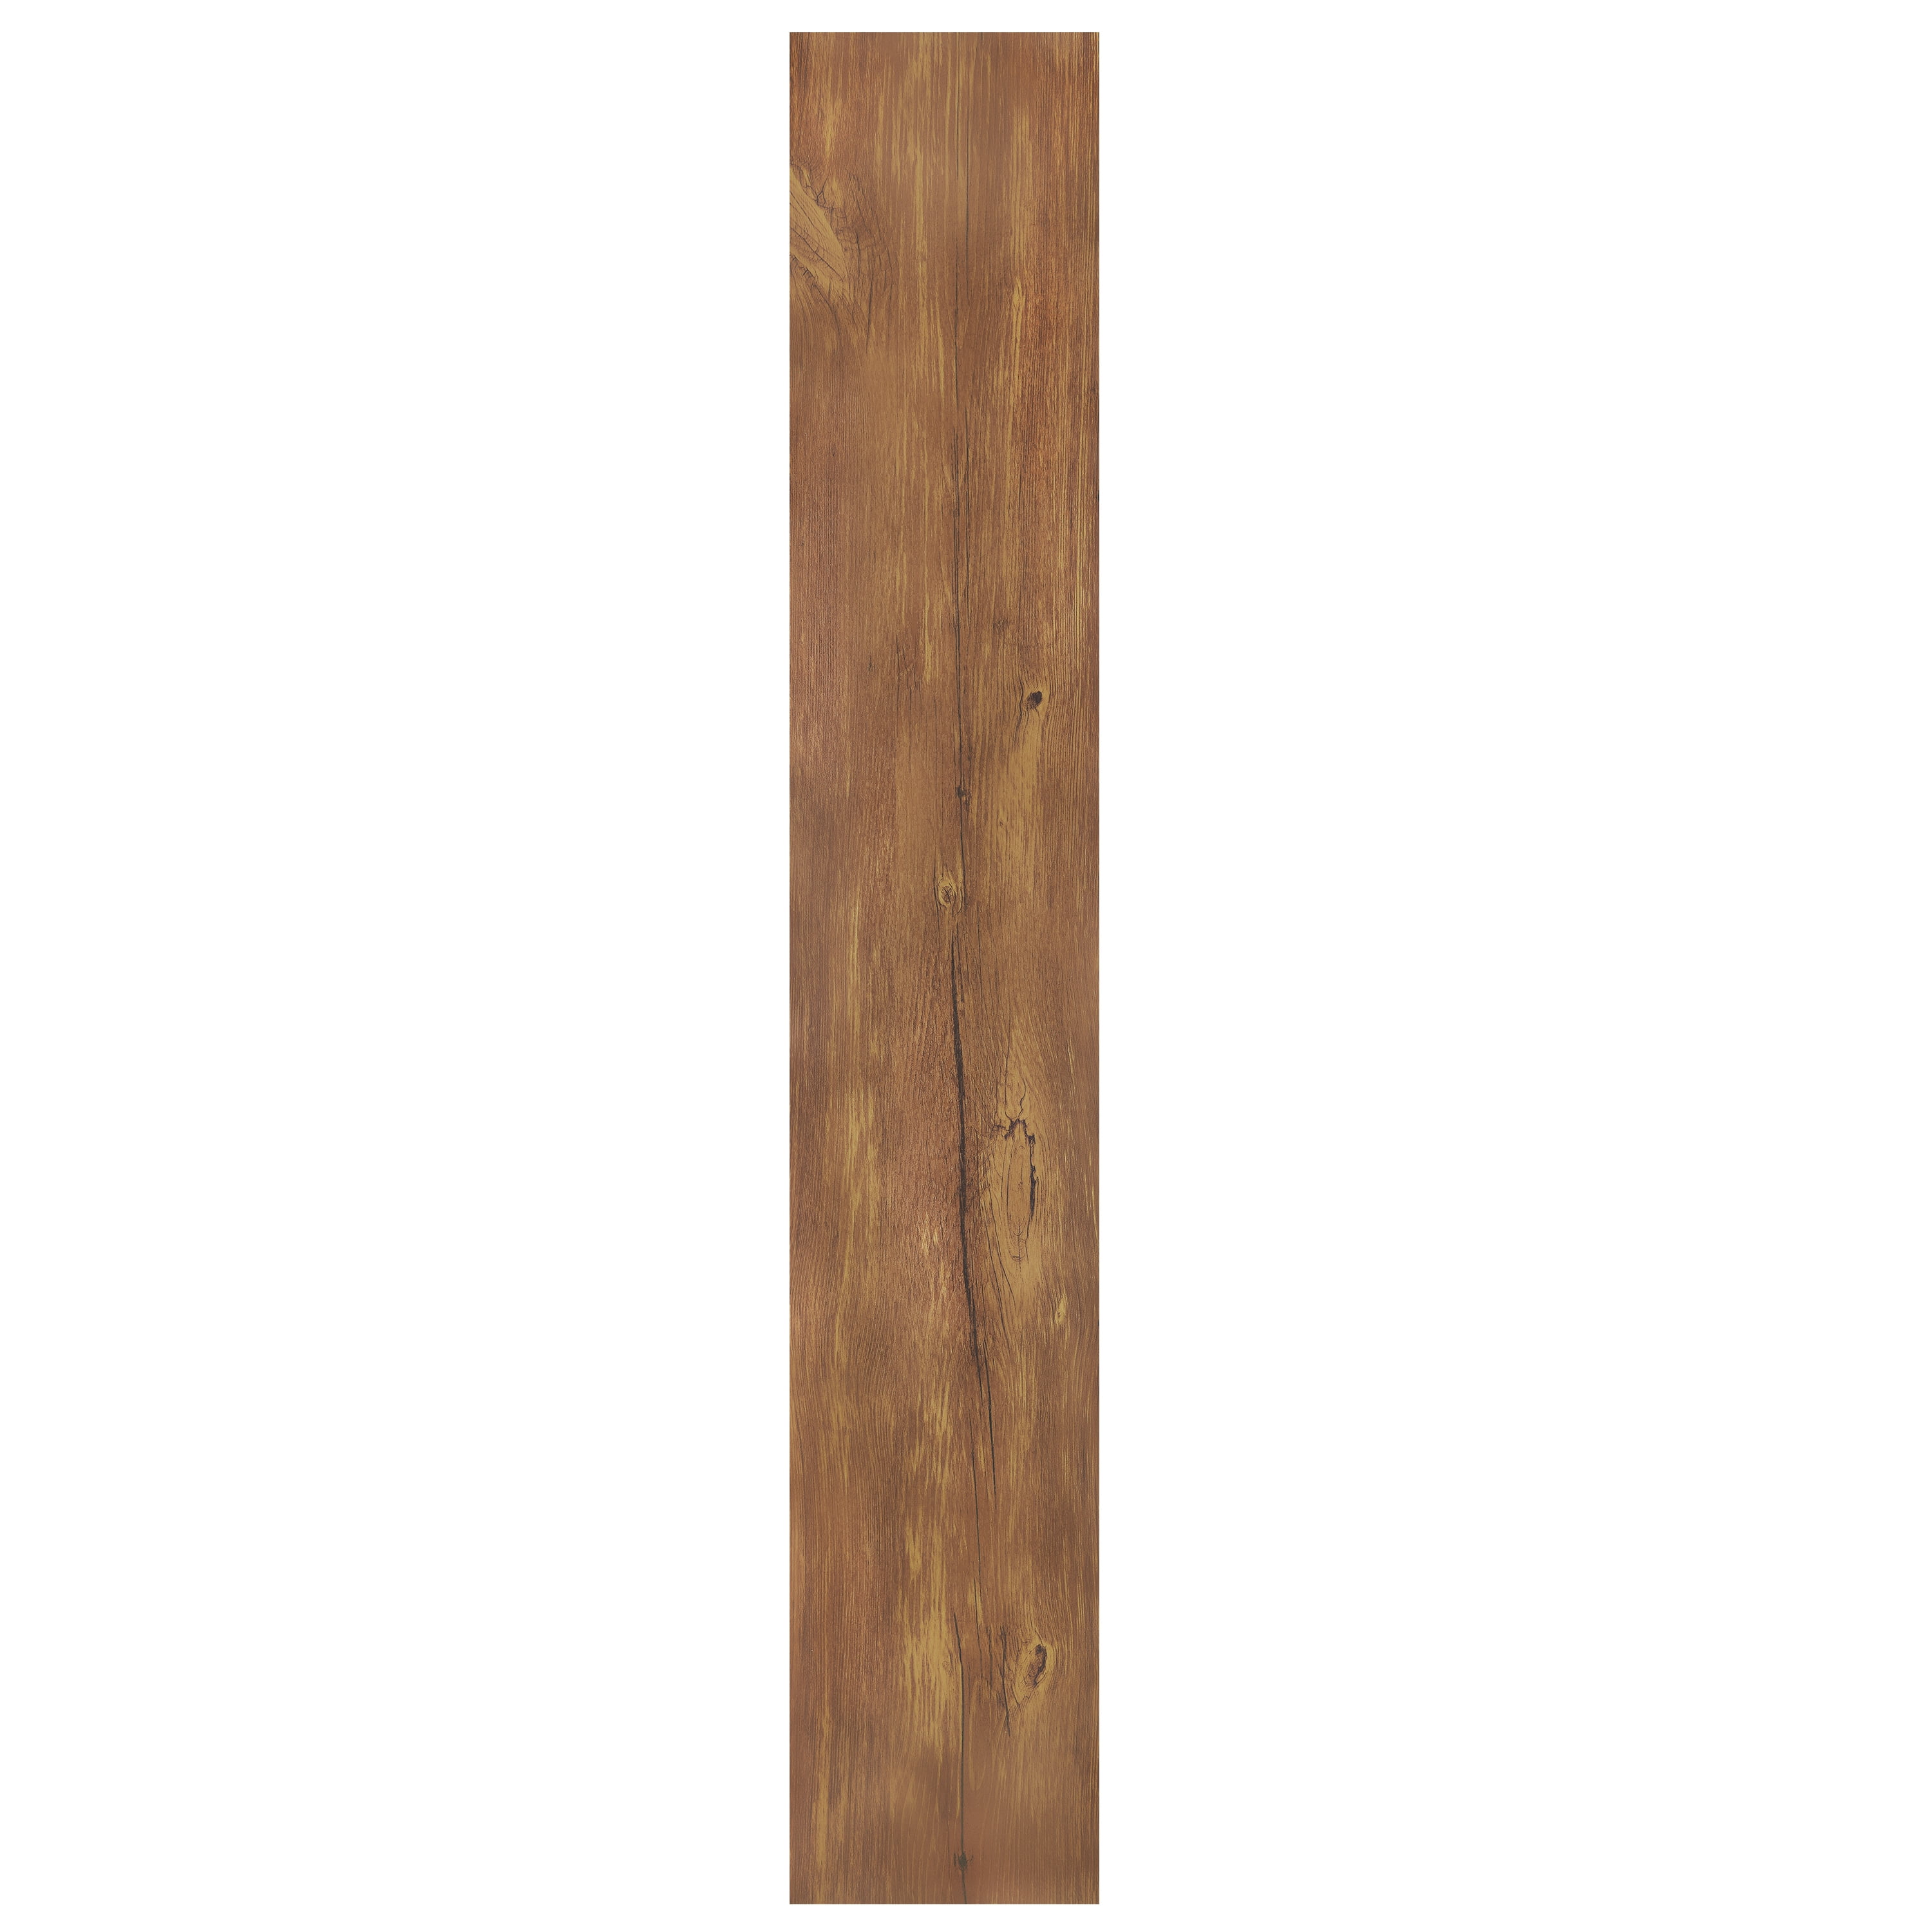 Achim Nexus 6 X36 1 2mm L Stick, Walnut Vinyl Plank Flooring